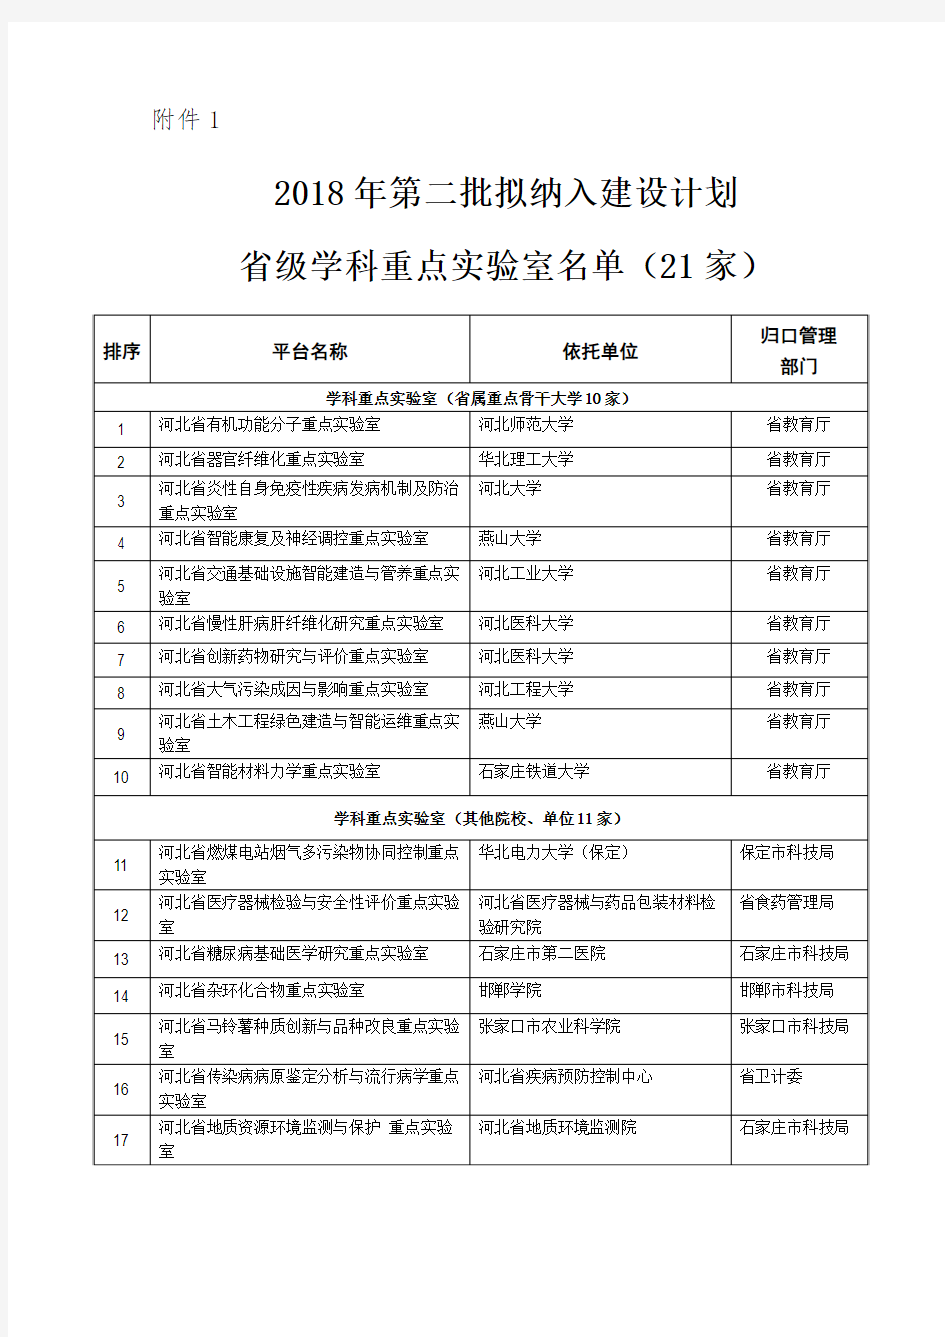 河北省2018年第二批拟纳入建设计划省级学科重点实验室名单